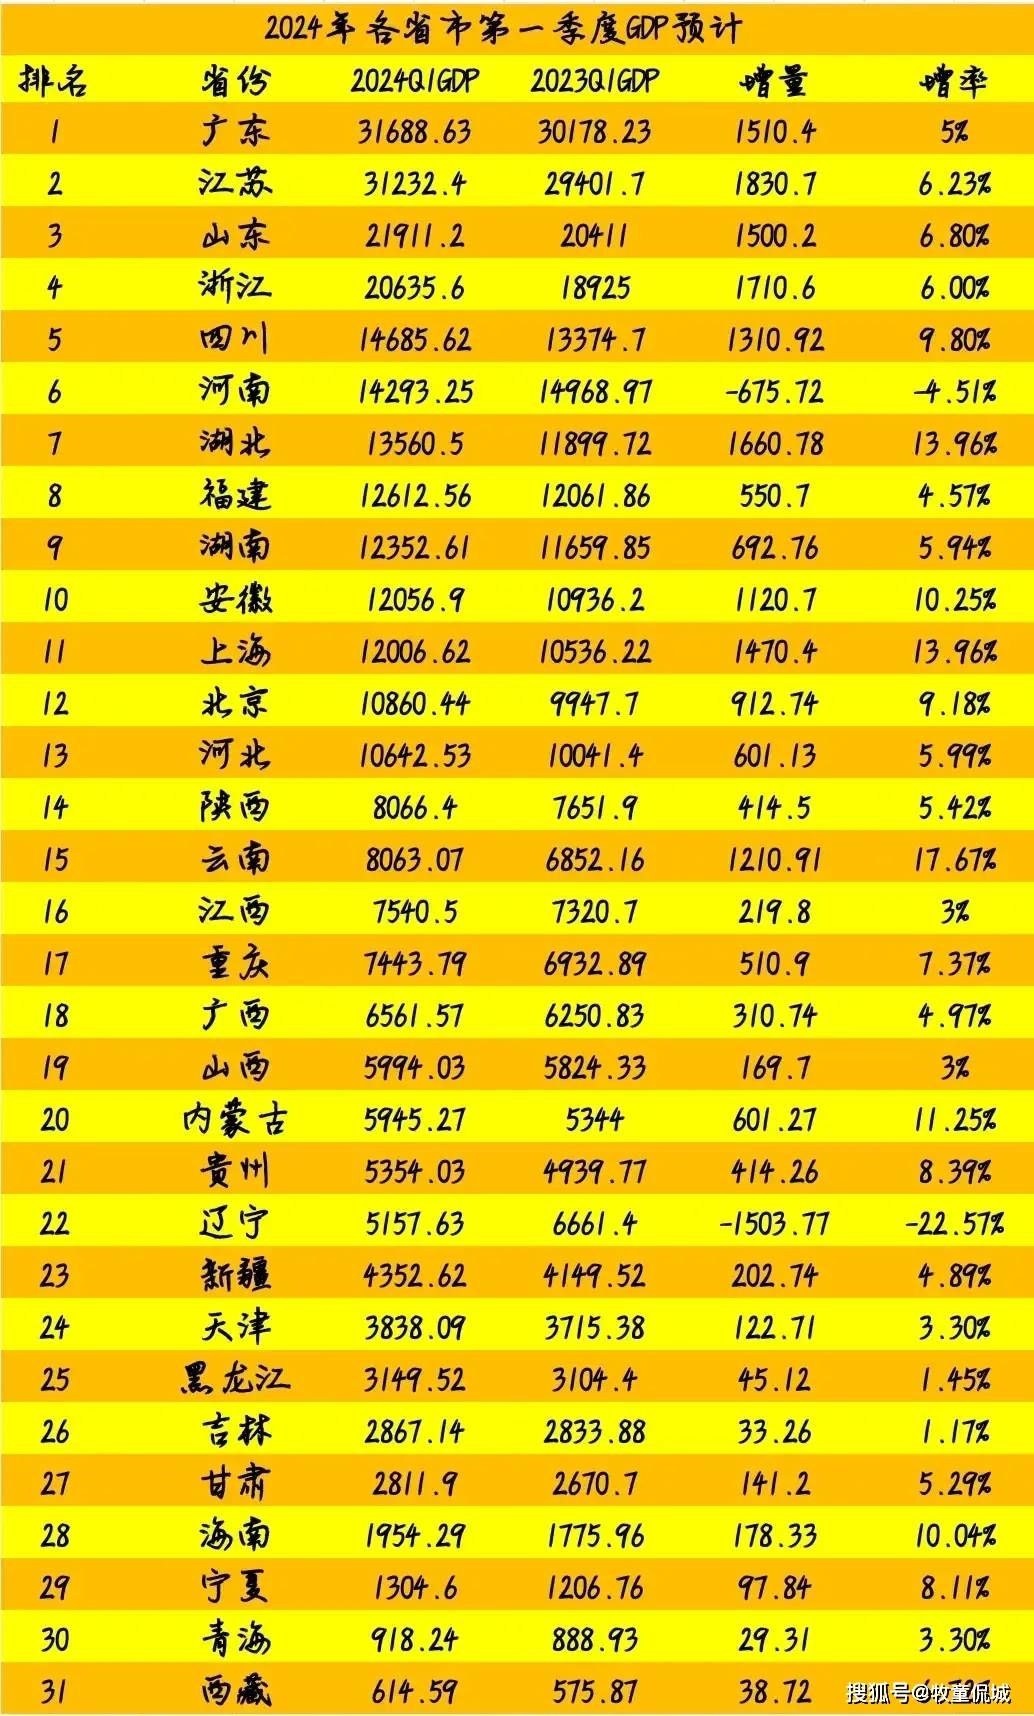 31省市2024年一季度gdp预测:四川超河南,安徽上海差距缩小